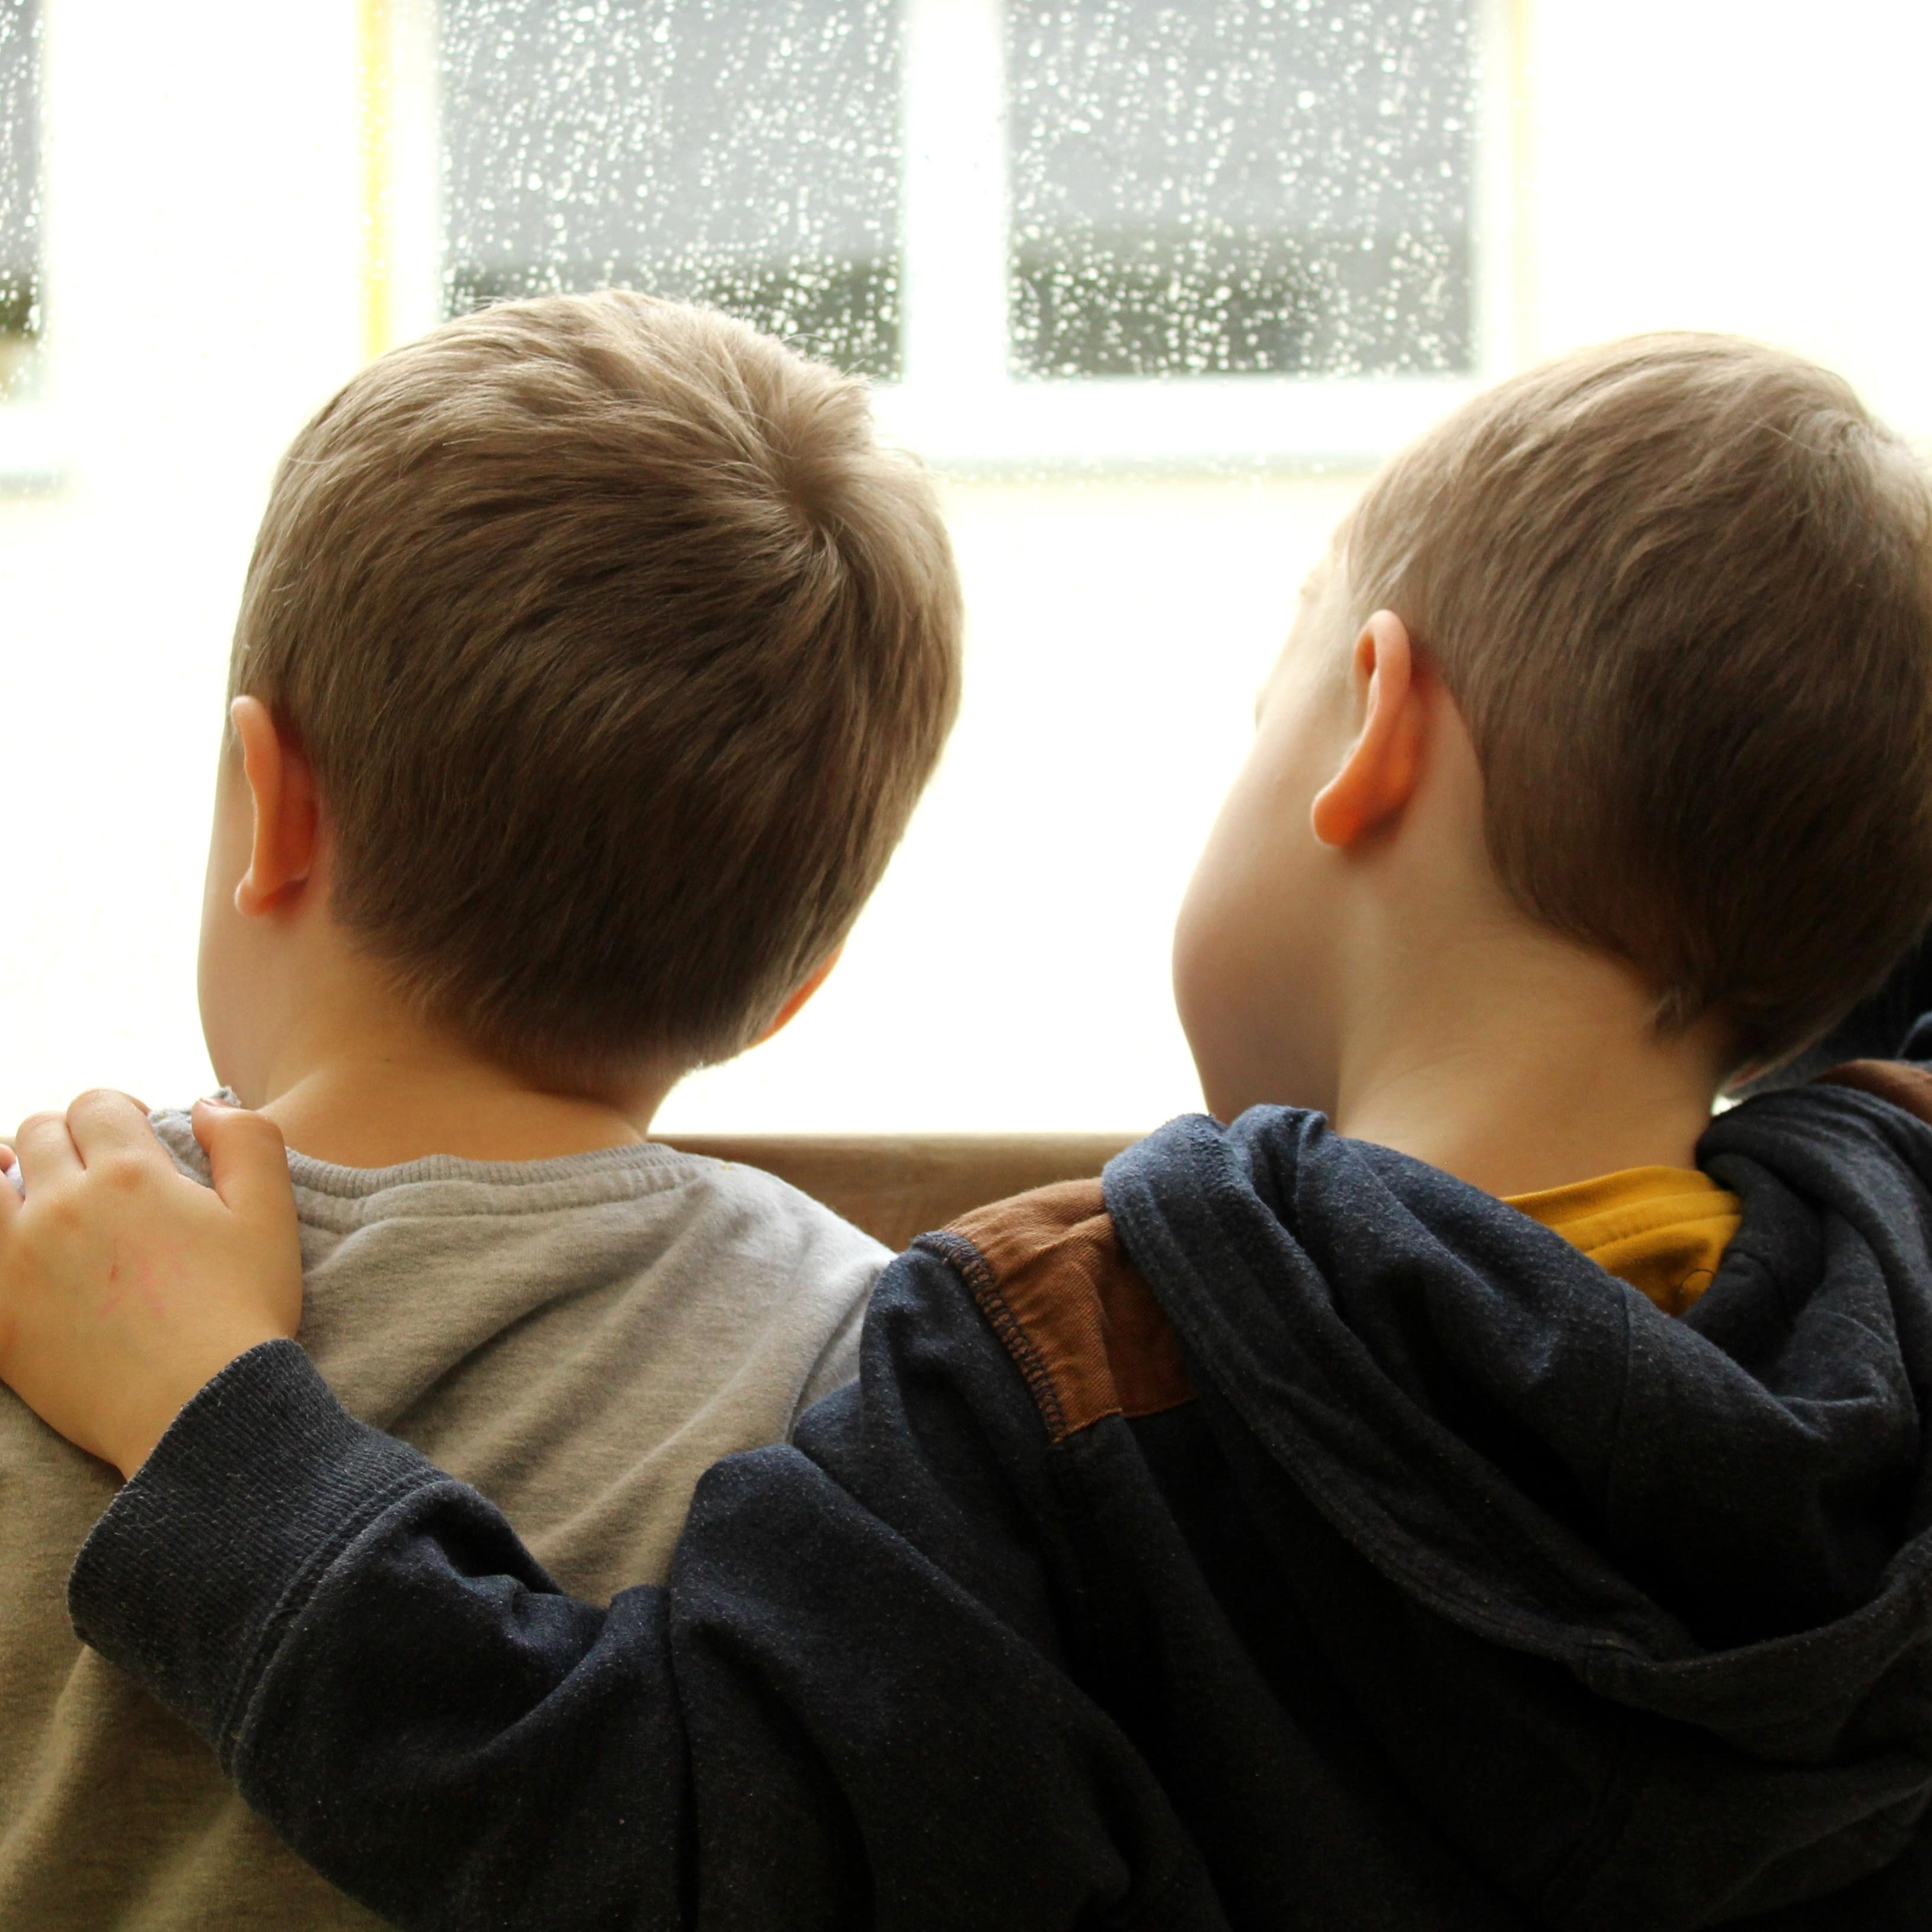 Zwei Jungen vor einer nassgeregneten Fensterscheibe